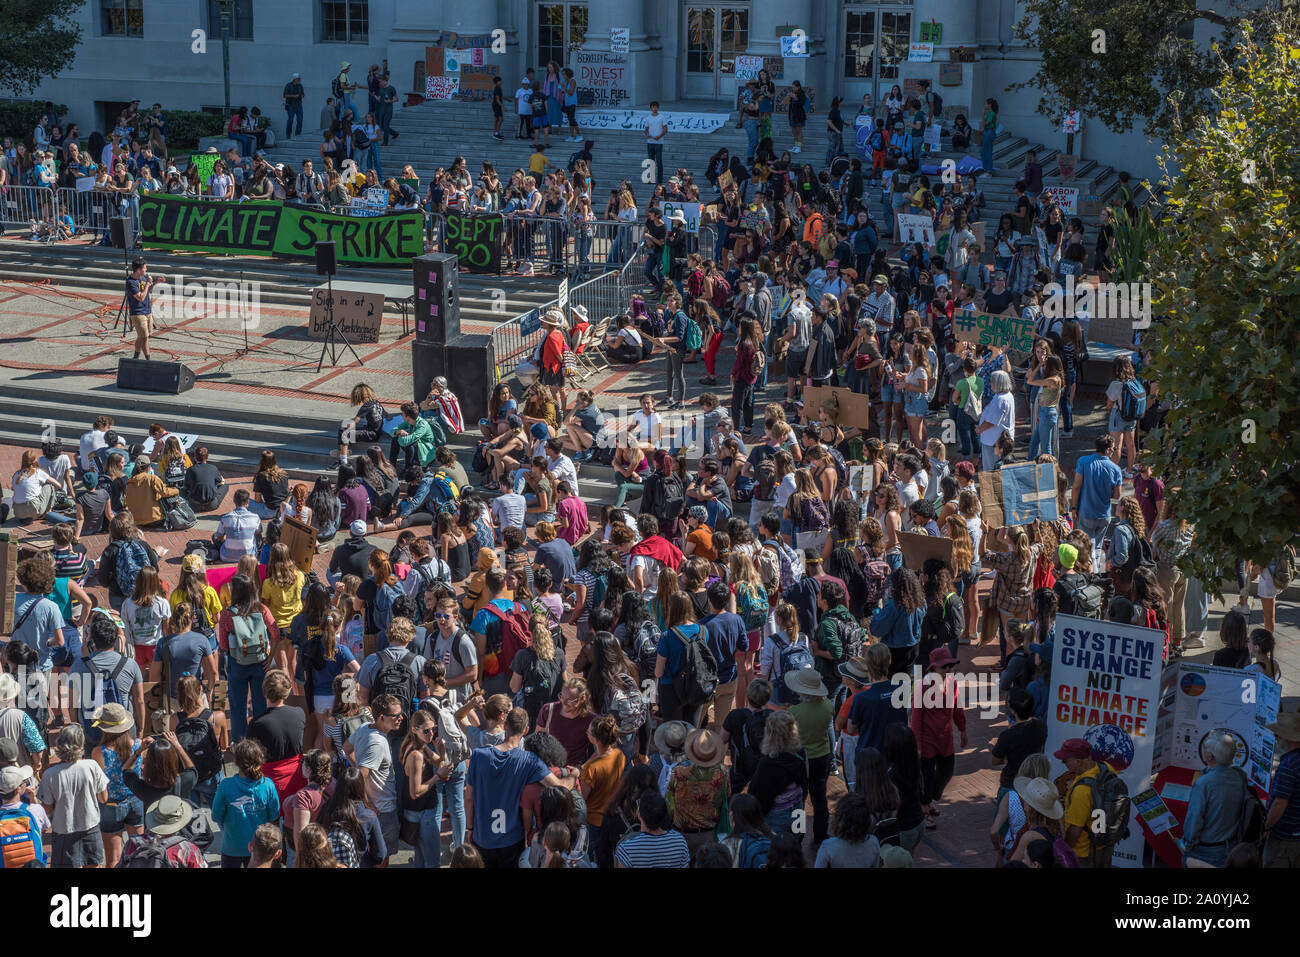 UC Berkeley estudiantes participan en la huelga por el clima walkout, protestando por el estado de los mundos el medio ambiente y el clima de la inacción. Foto de stock